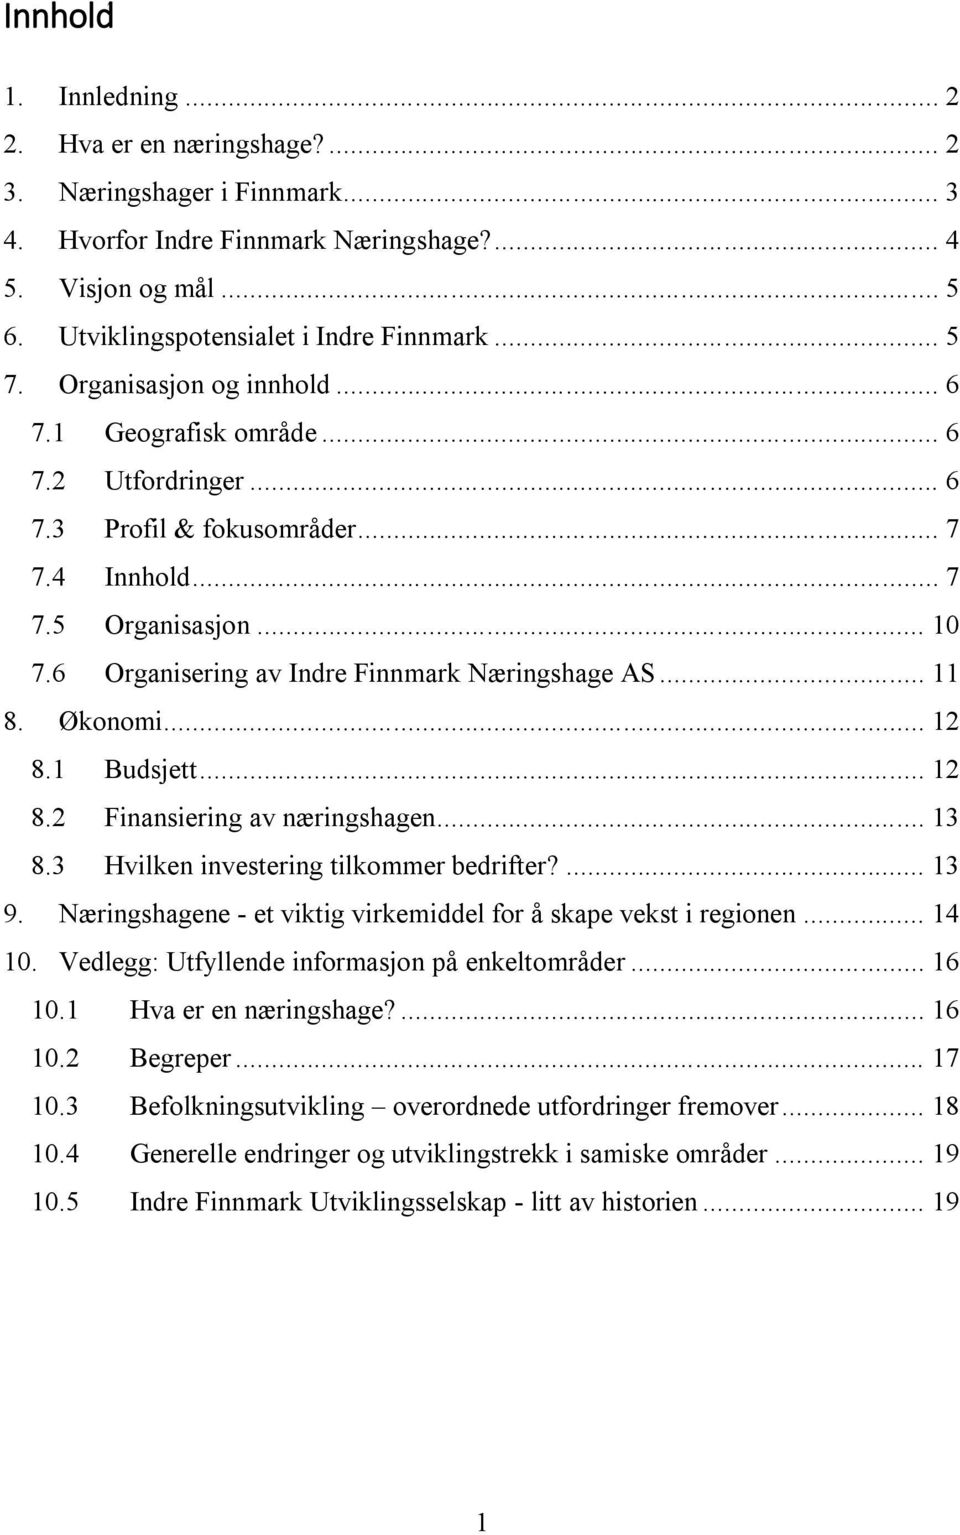 6 Organisering av Indre Finnmark Næringshage AS... 11 8. Økonomi... 12 8.1 Budsjett... 12 8.2 Finansiering av næringshagen... 13 8.3 Hvilken investering tilkommer bedrifter?... 13 9.